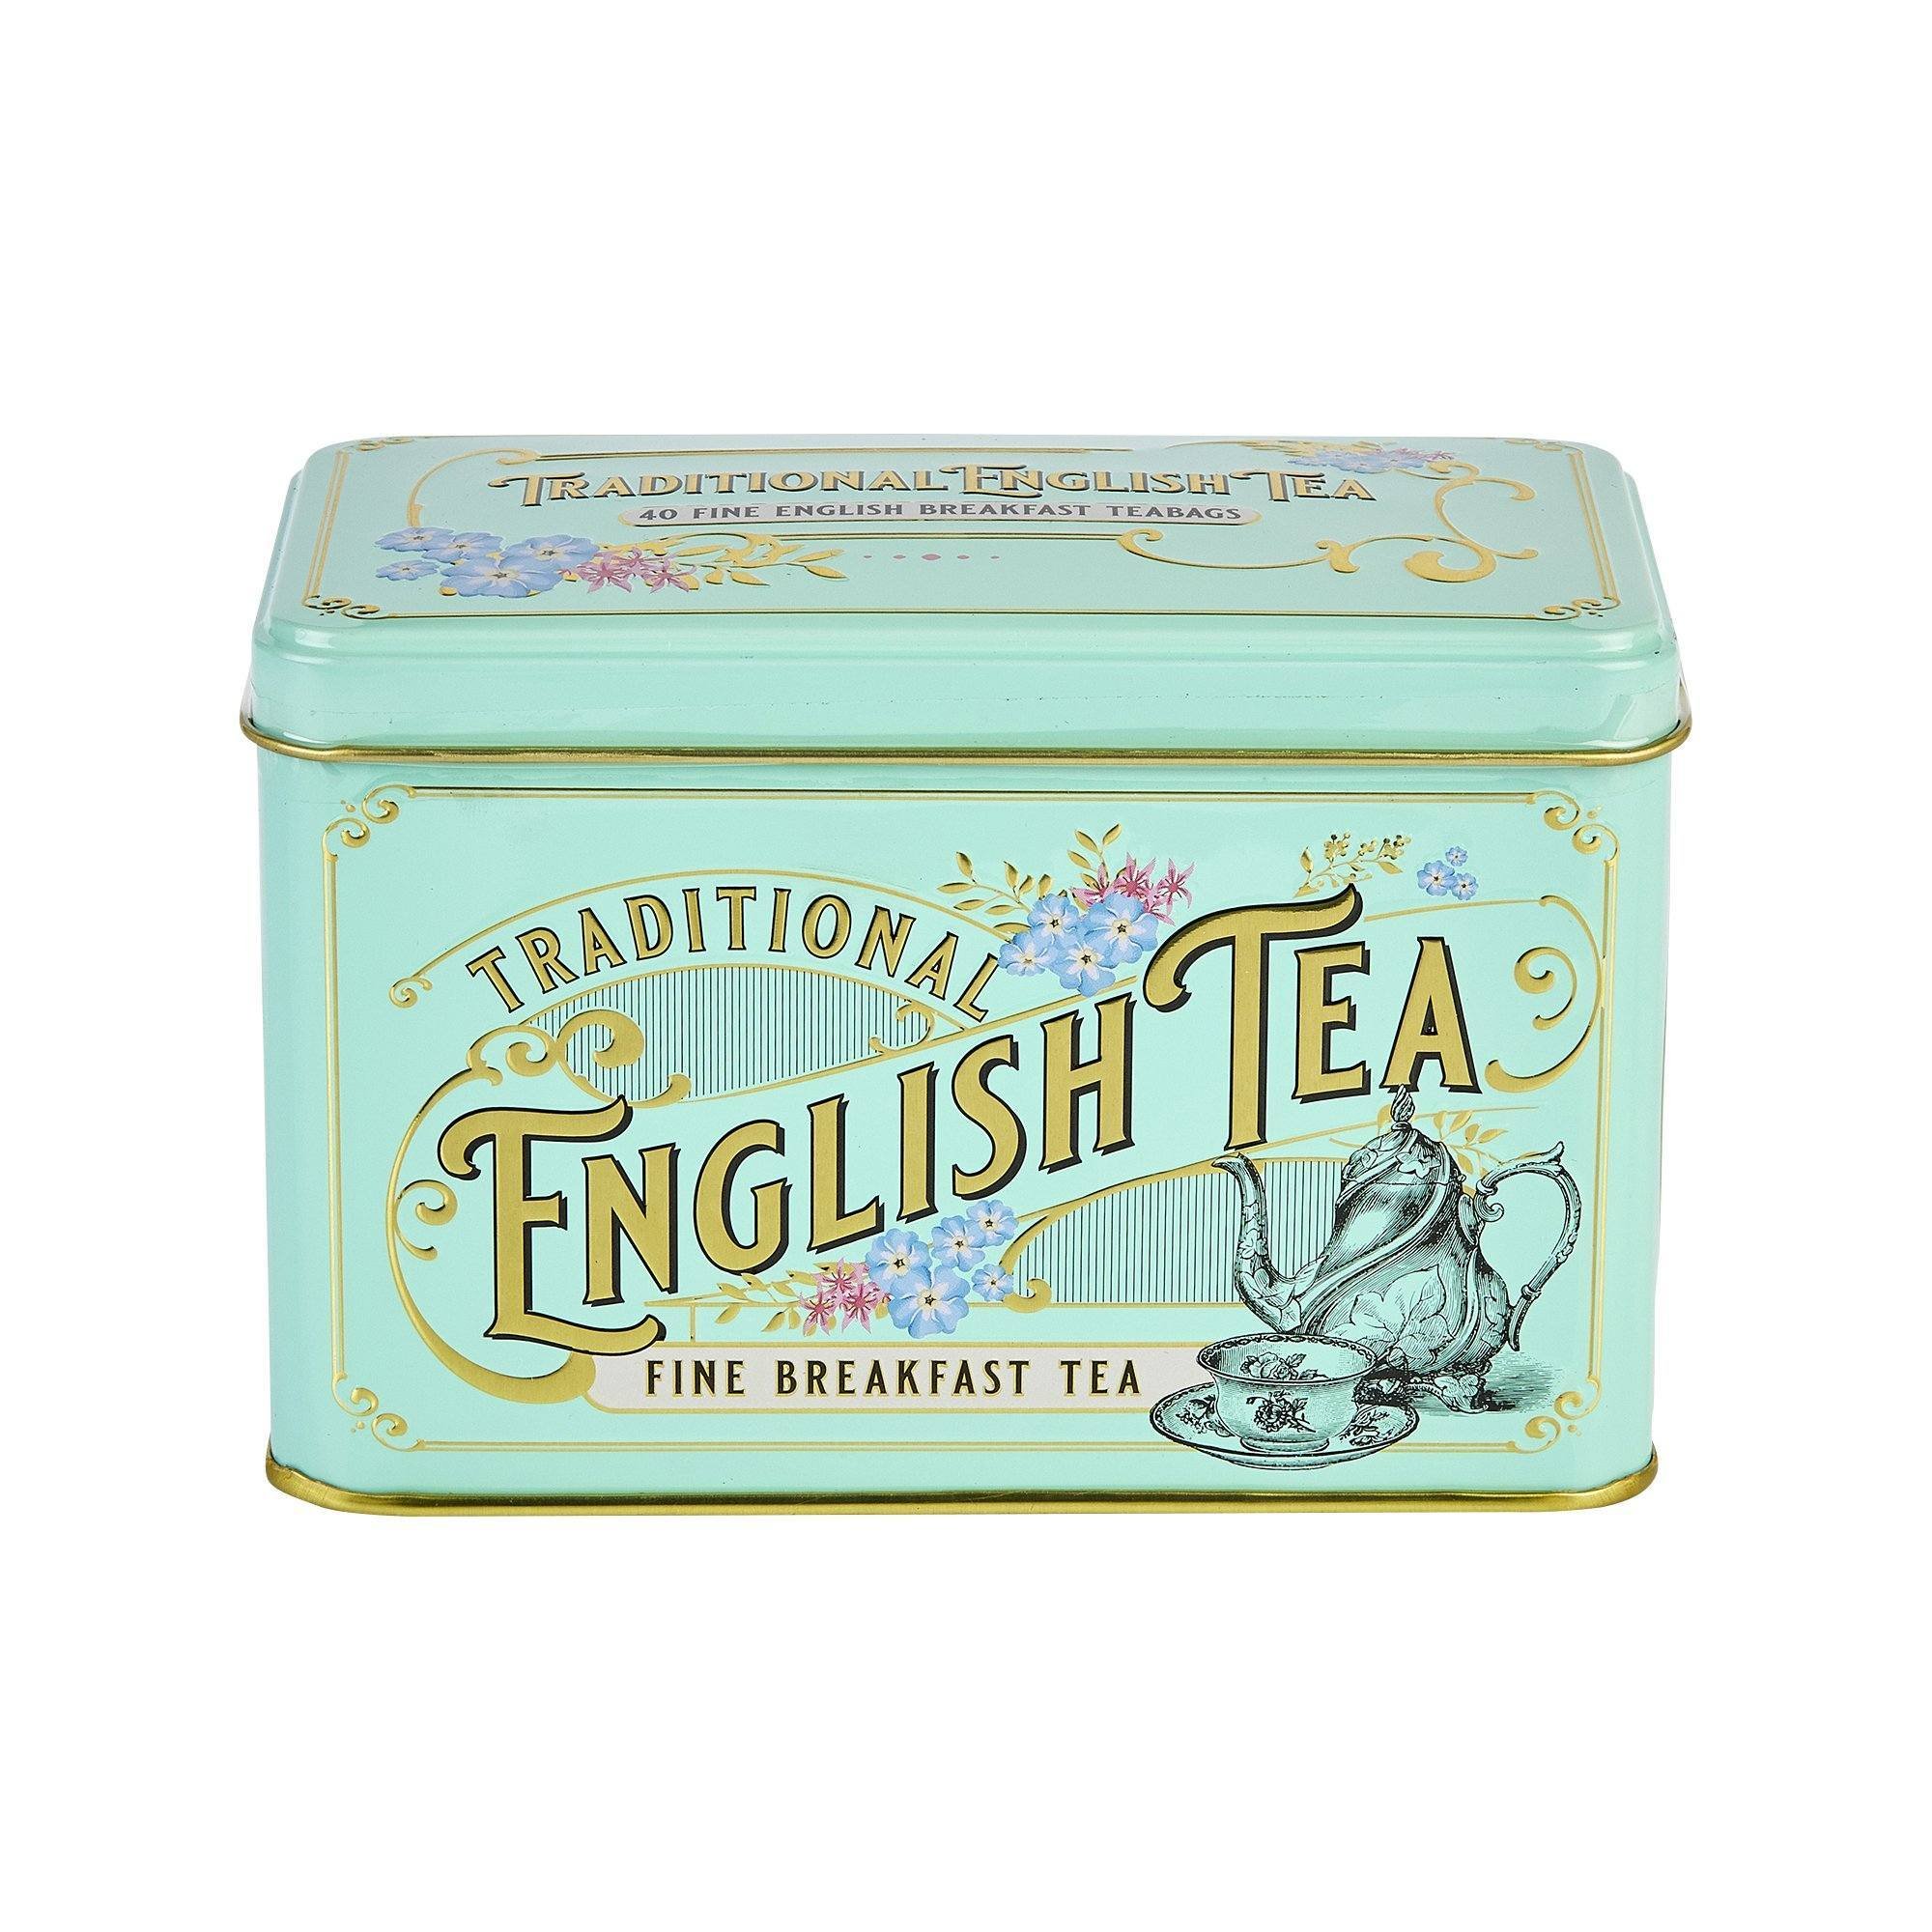 Levně New English Teas čaj plechovka RS47, 40 sáčků (80 g), VINTAGE VICTORIAN, NET